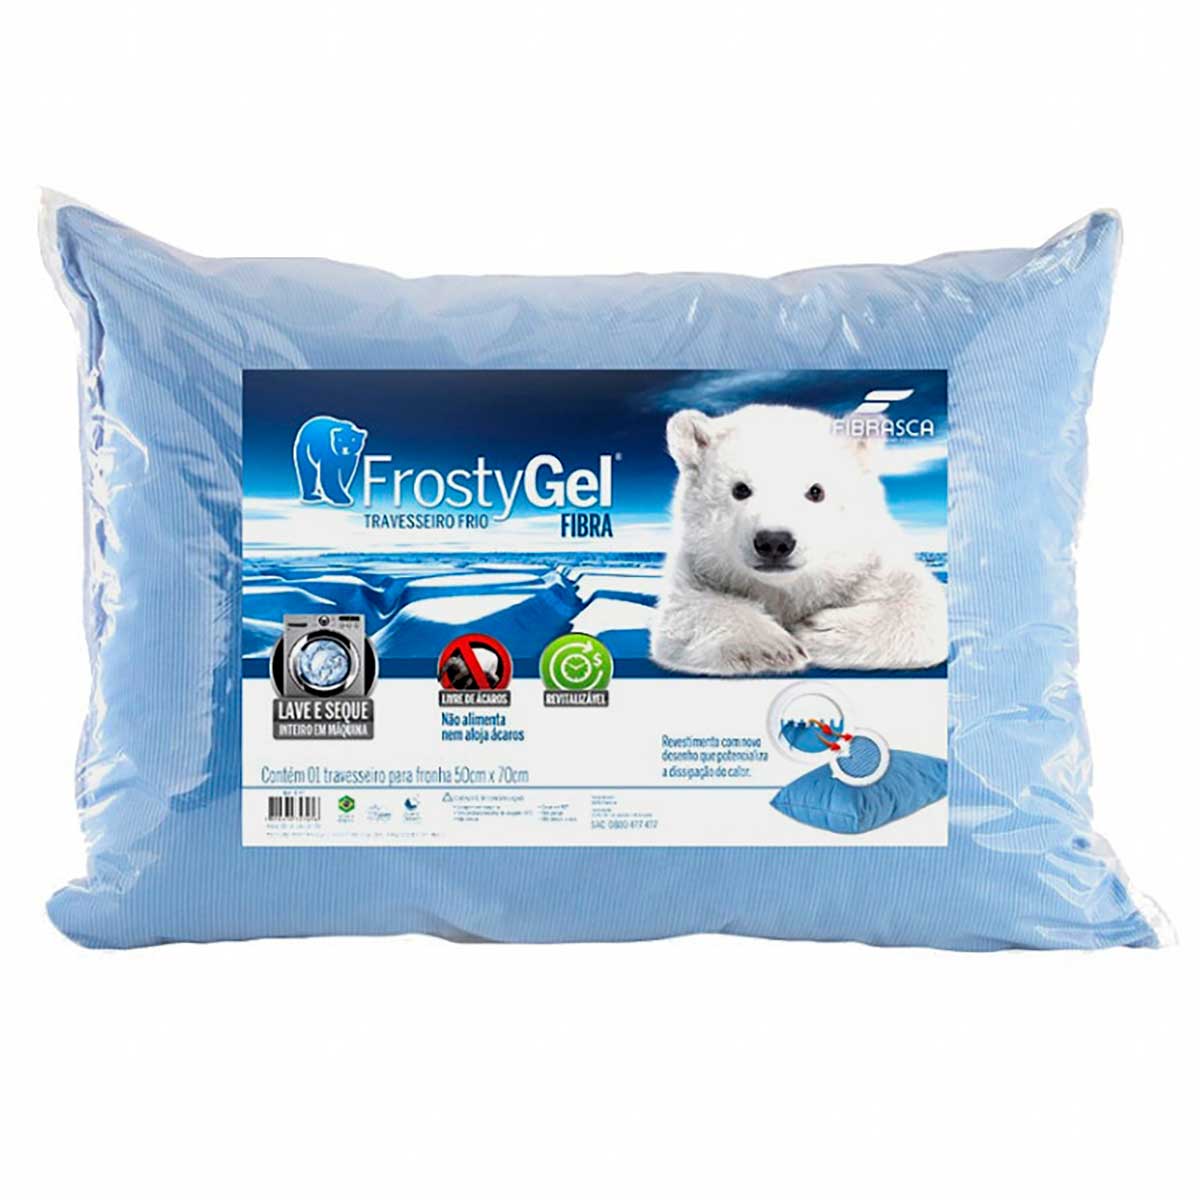 travesseiro-frio-em-fibra-de-poliester-siliconizada-50x70cm-fibrasca-frostygel-4345-azul-1-peca-1.jpg